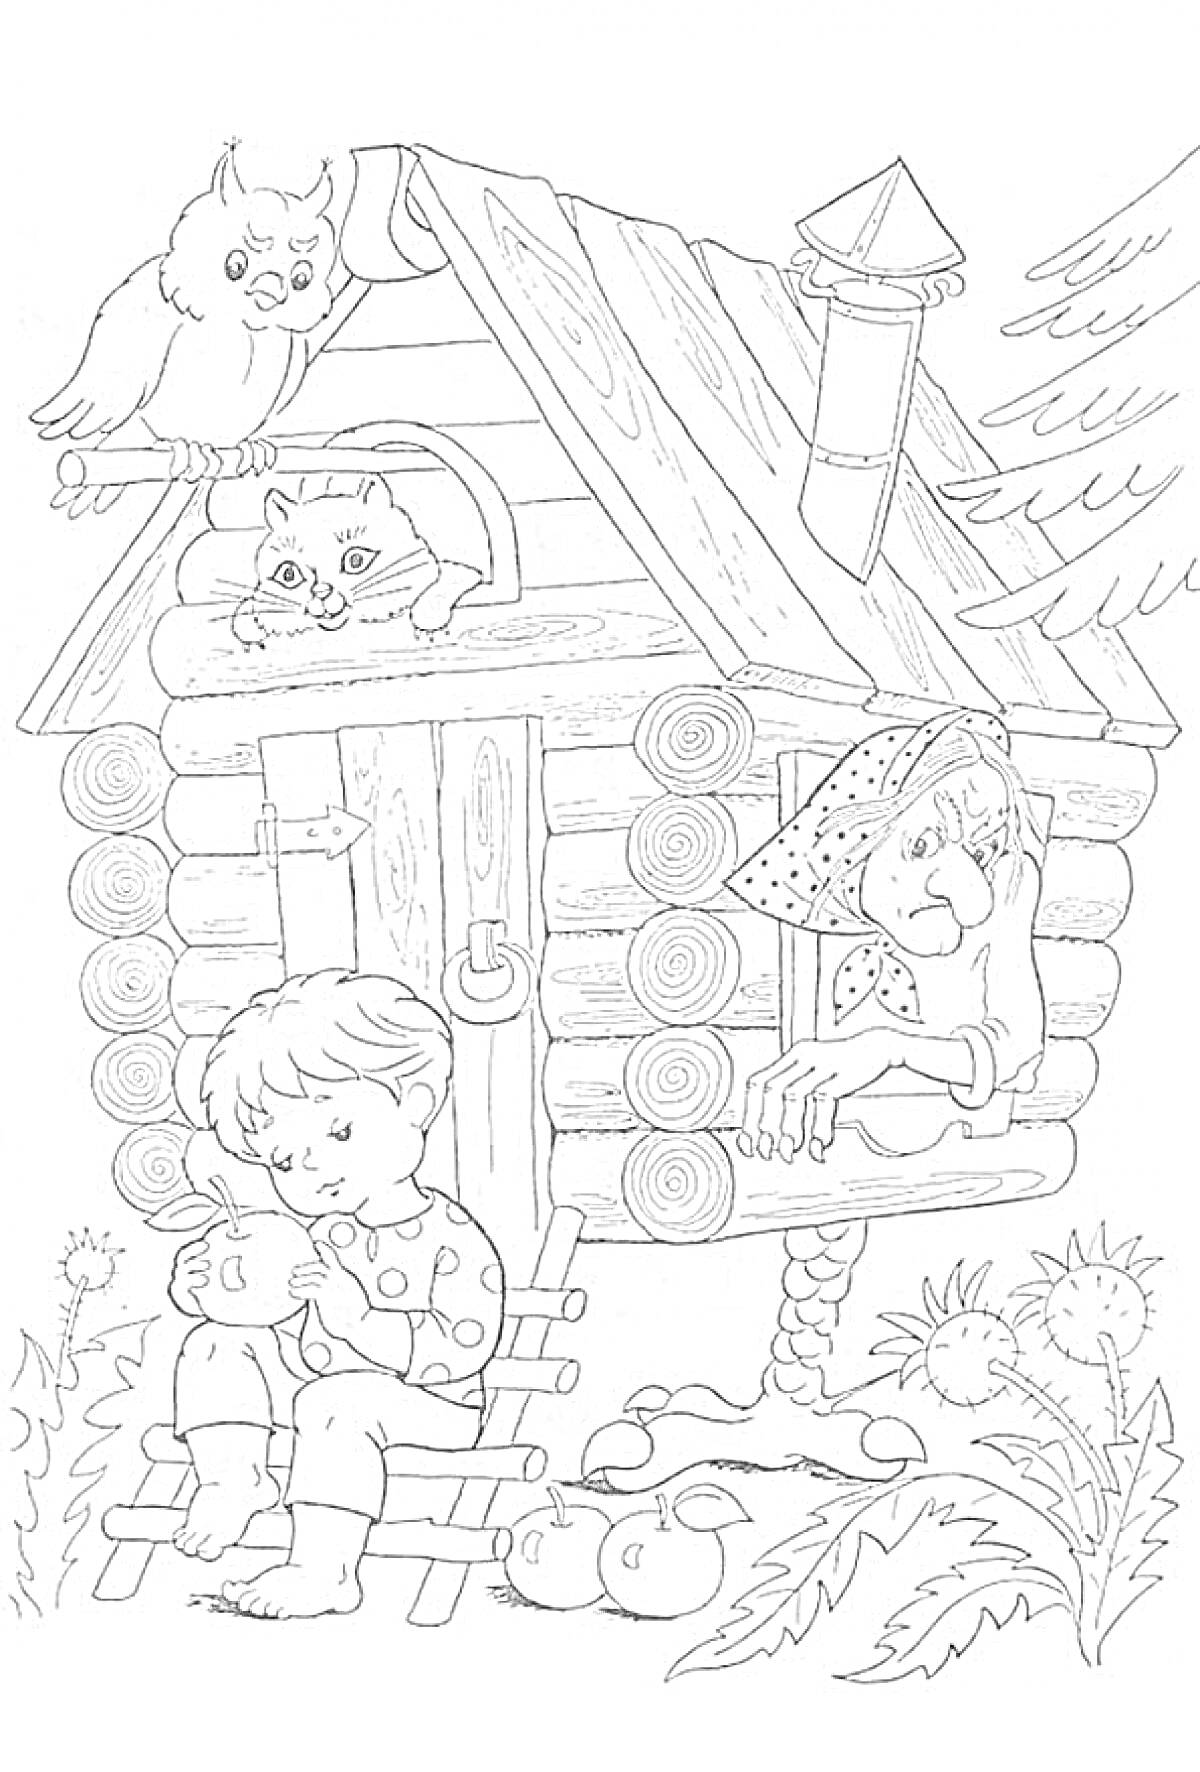 Мальчик с куклой возле избушки на курьих ножках, в которой находится Баба Яга, на крыше сидят филин и кот.